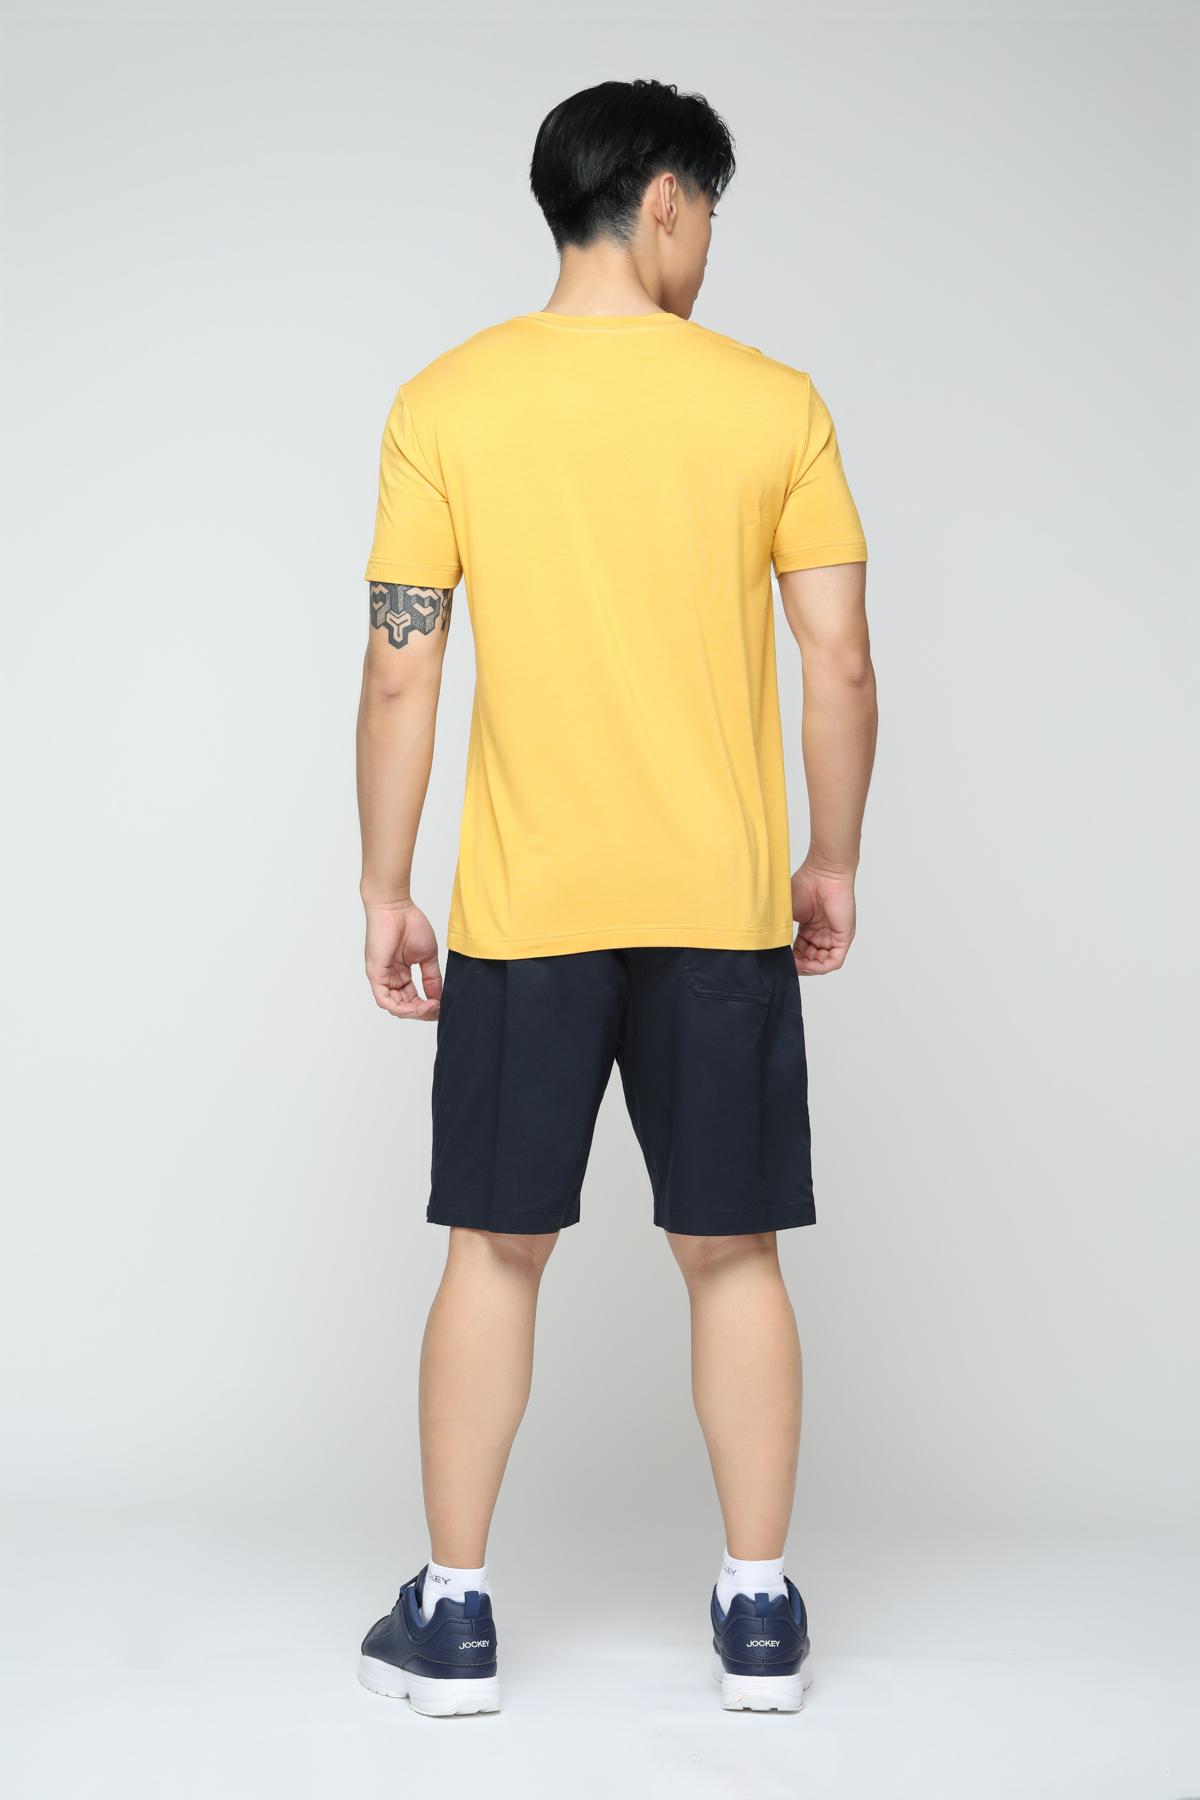 Áo T-Shirt nam Jockey chất liệu Visco - 1149